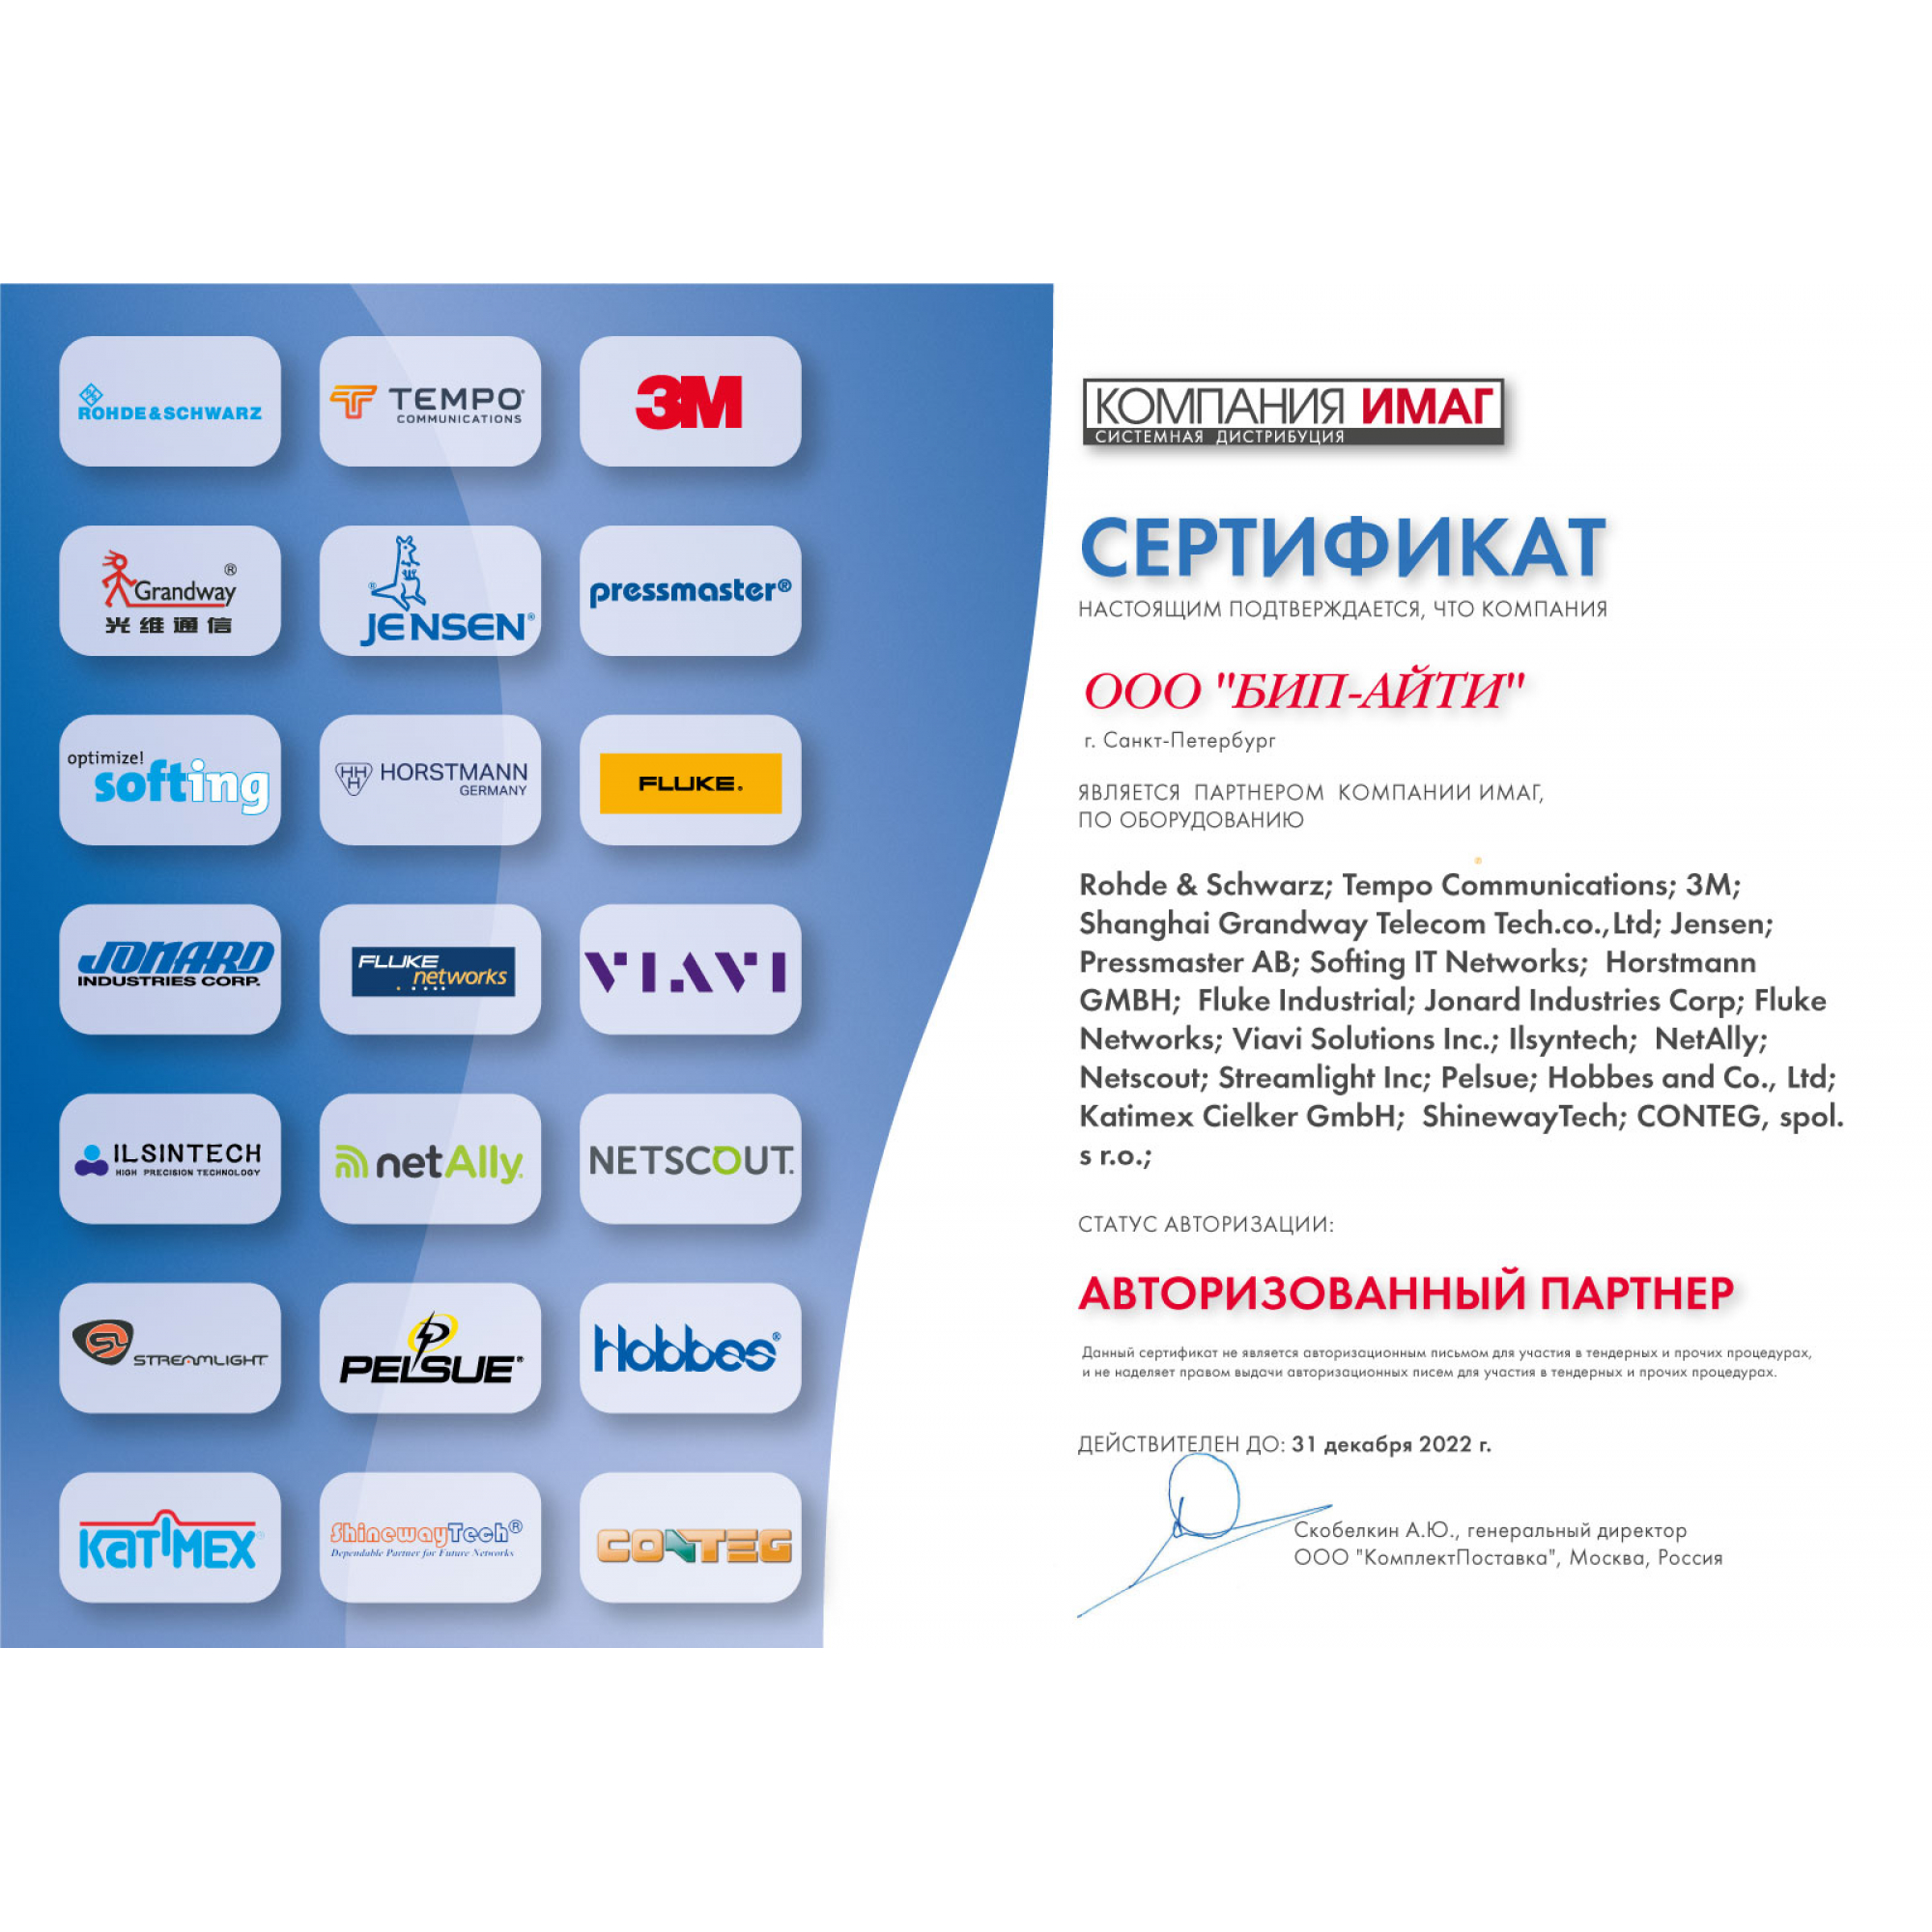 Сертификат авторизованного партнера компании ИМАГ